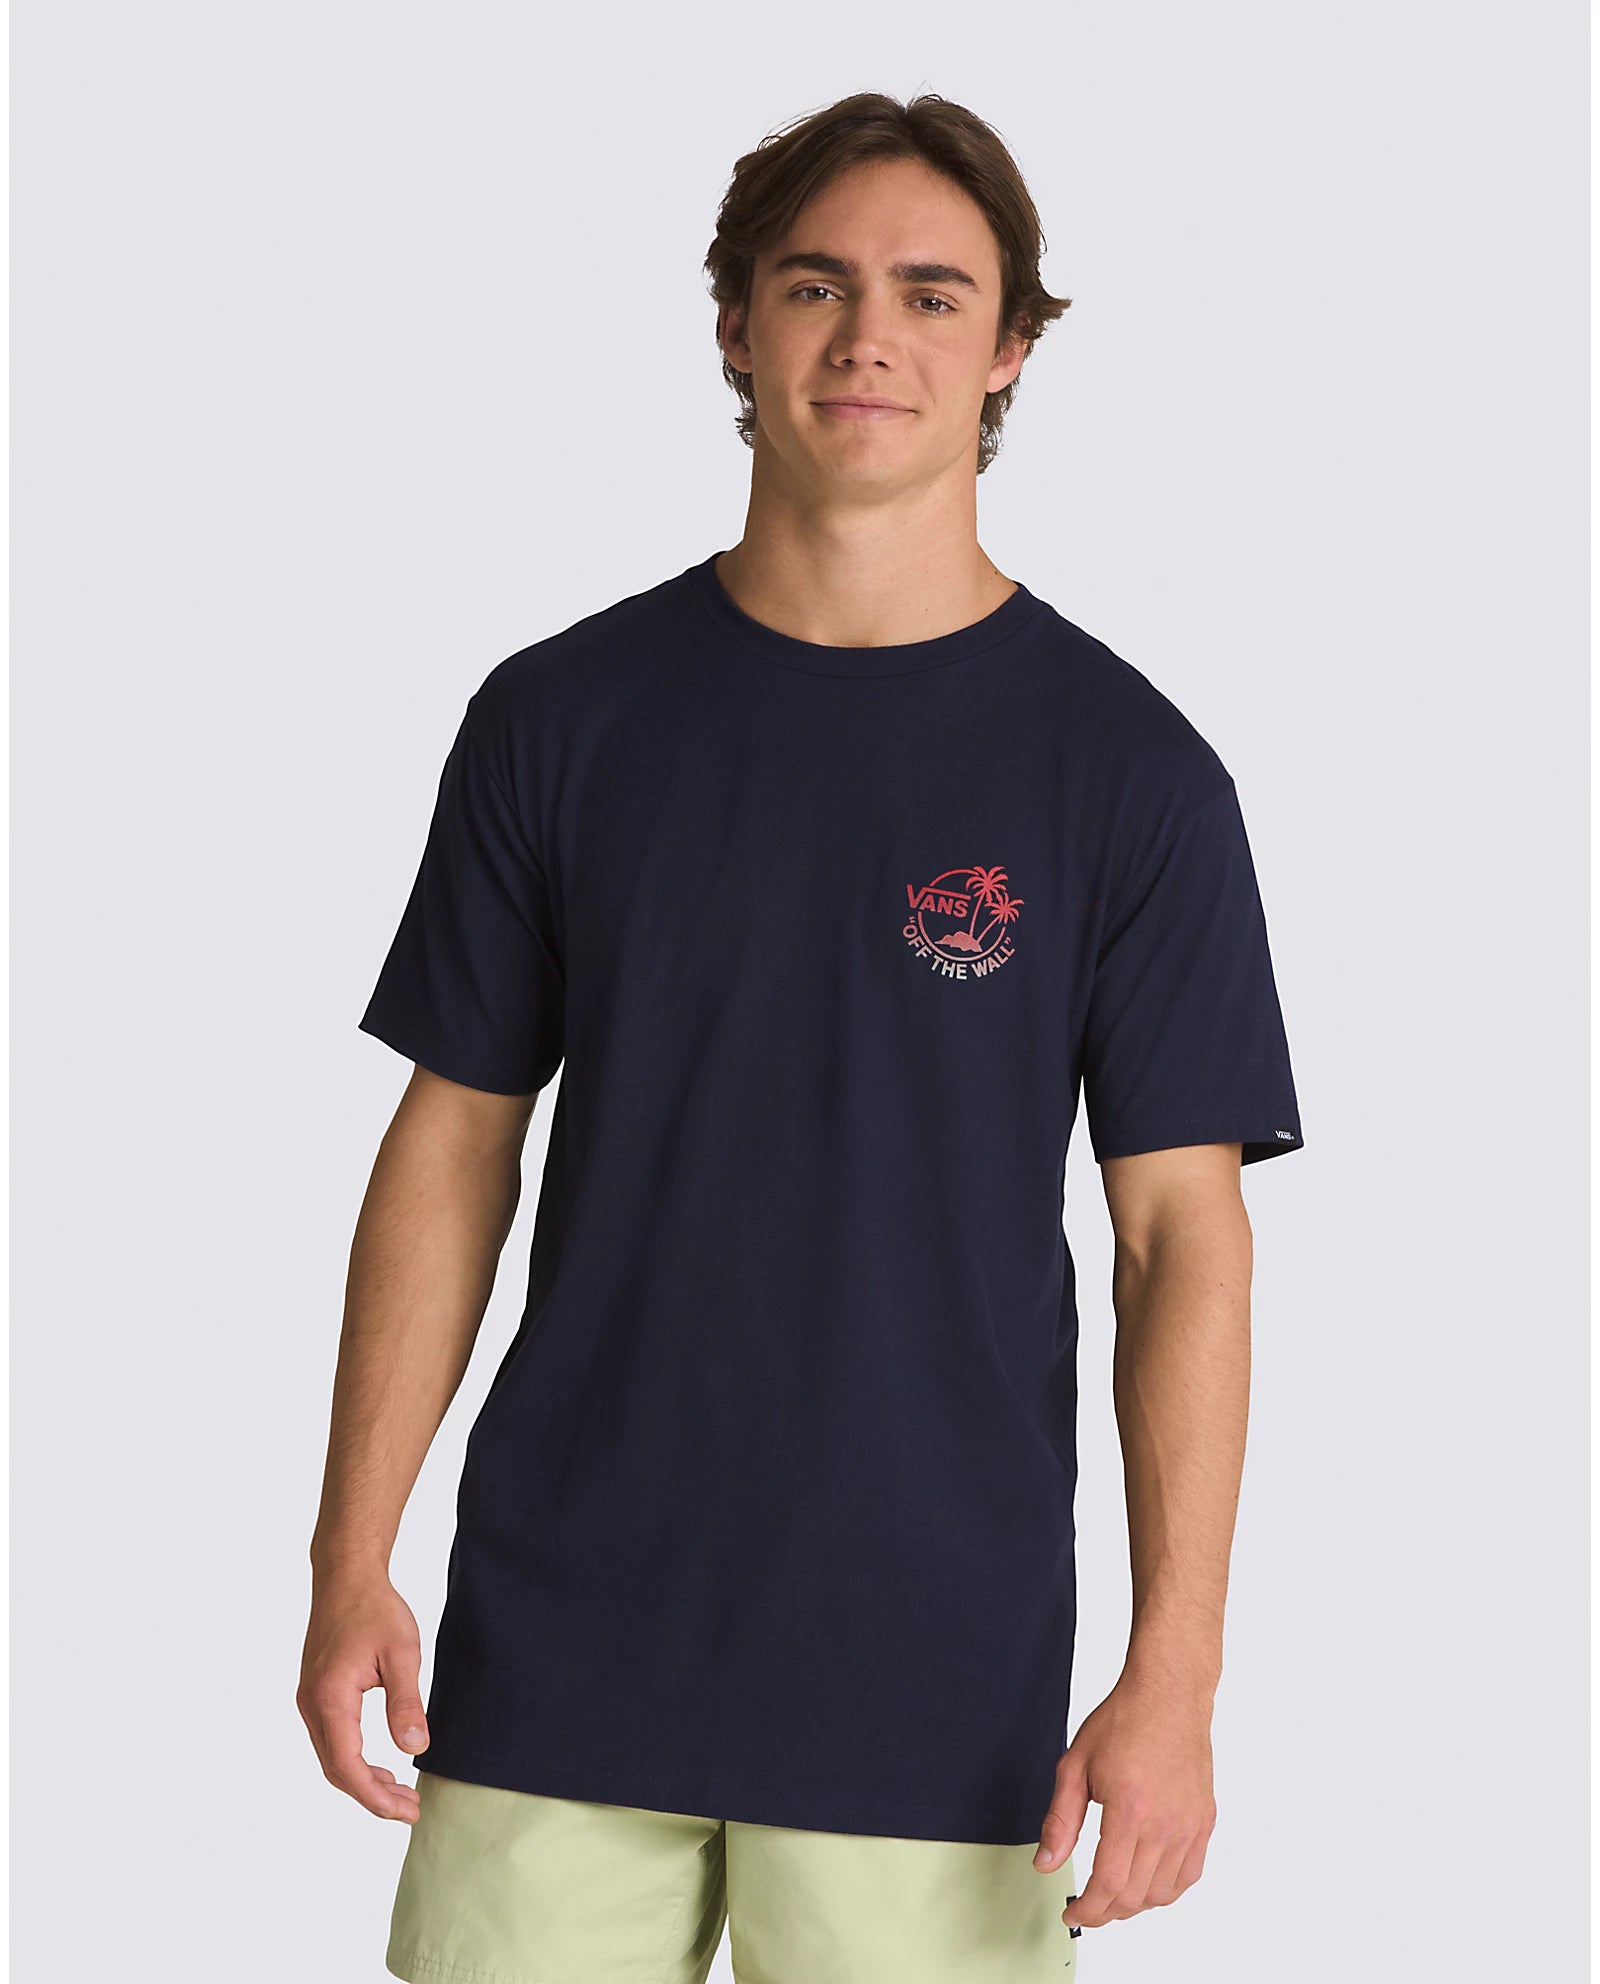 VANS Classic Mini Dual Palm Tee Shirt - Navy Mens T Shirt